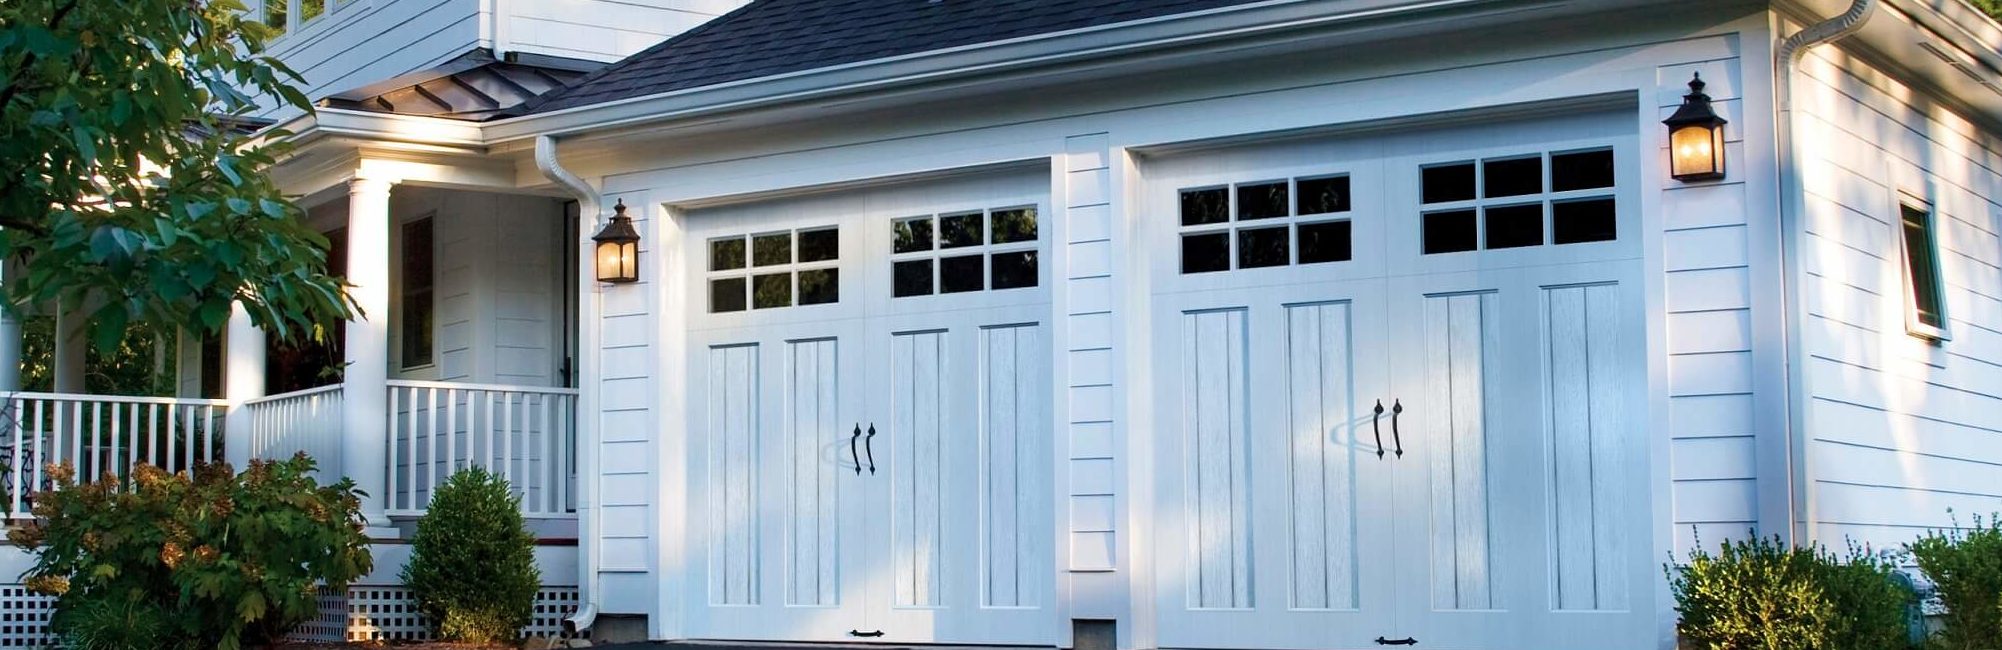 Modern Garage door companies greensboro nc  garage door Style